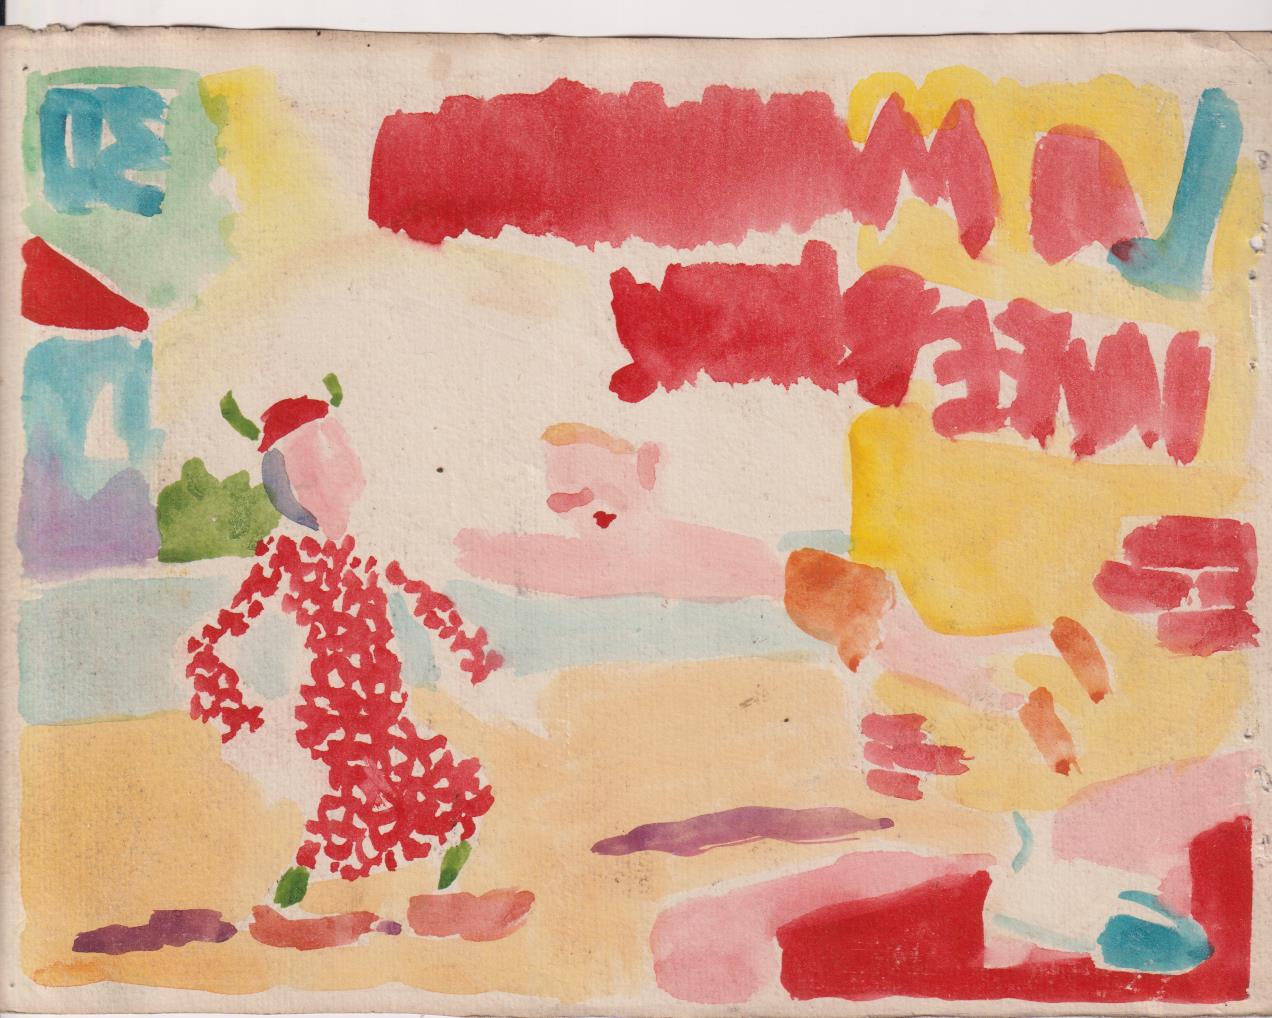 Narizán. Dibujos originales de Antonio Ayné Esbert 1944. Tebeo completo, 9 hojas + color